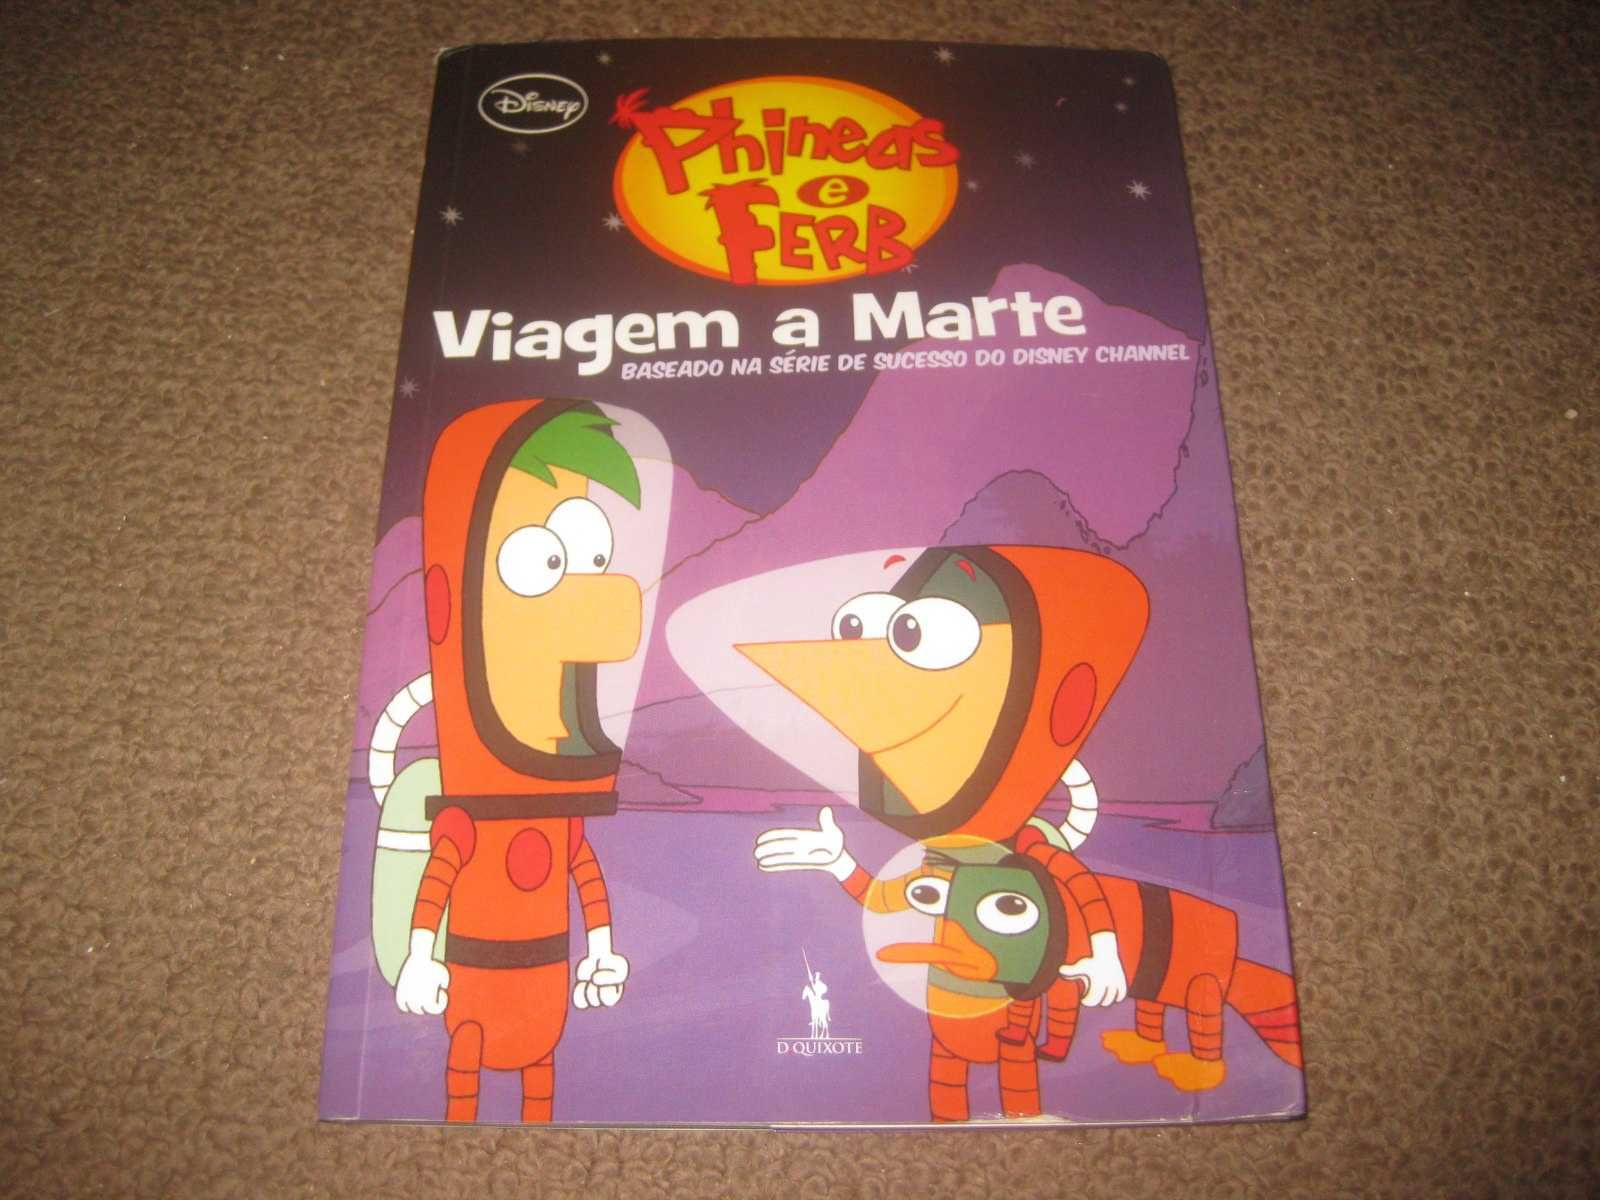 Livro "Phineas e Ferb: Viagem a Marte"